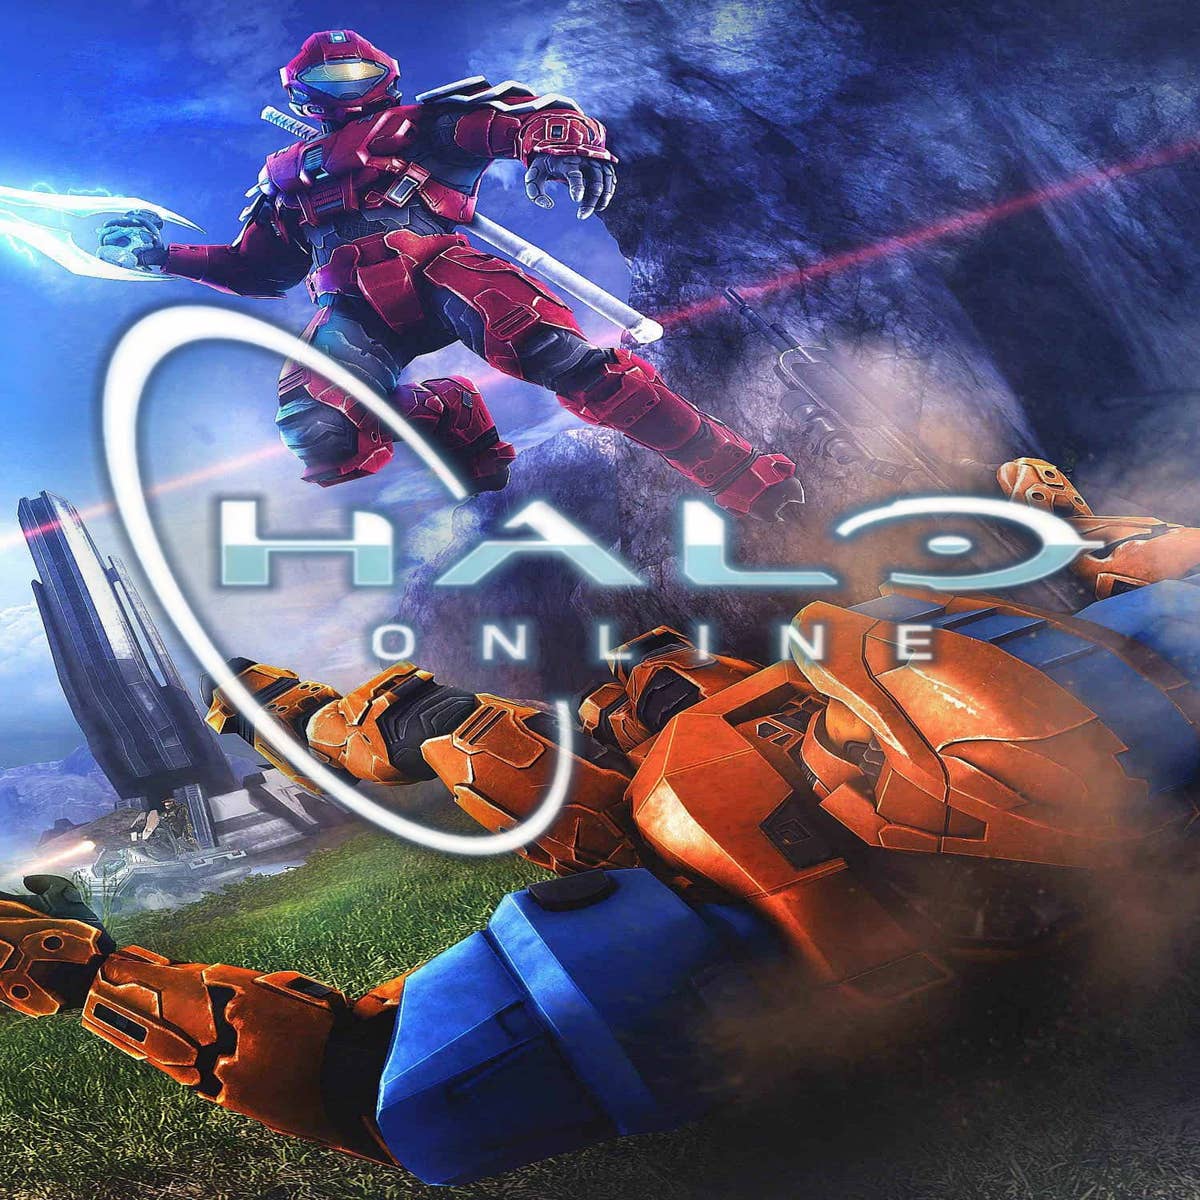 Halo Online (ElDewrito) – Beta Download